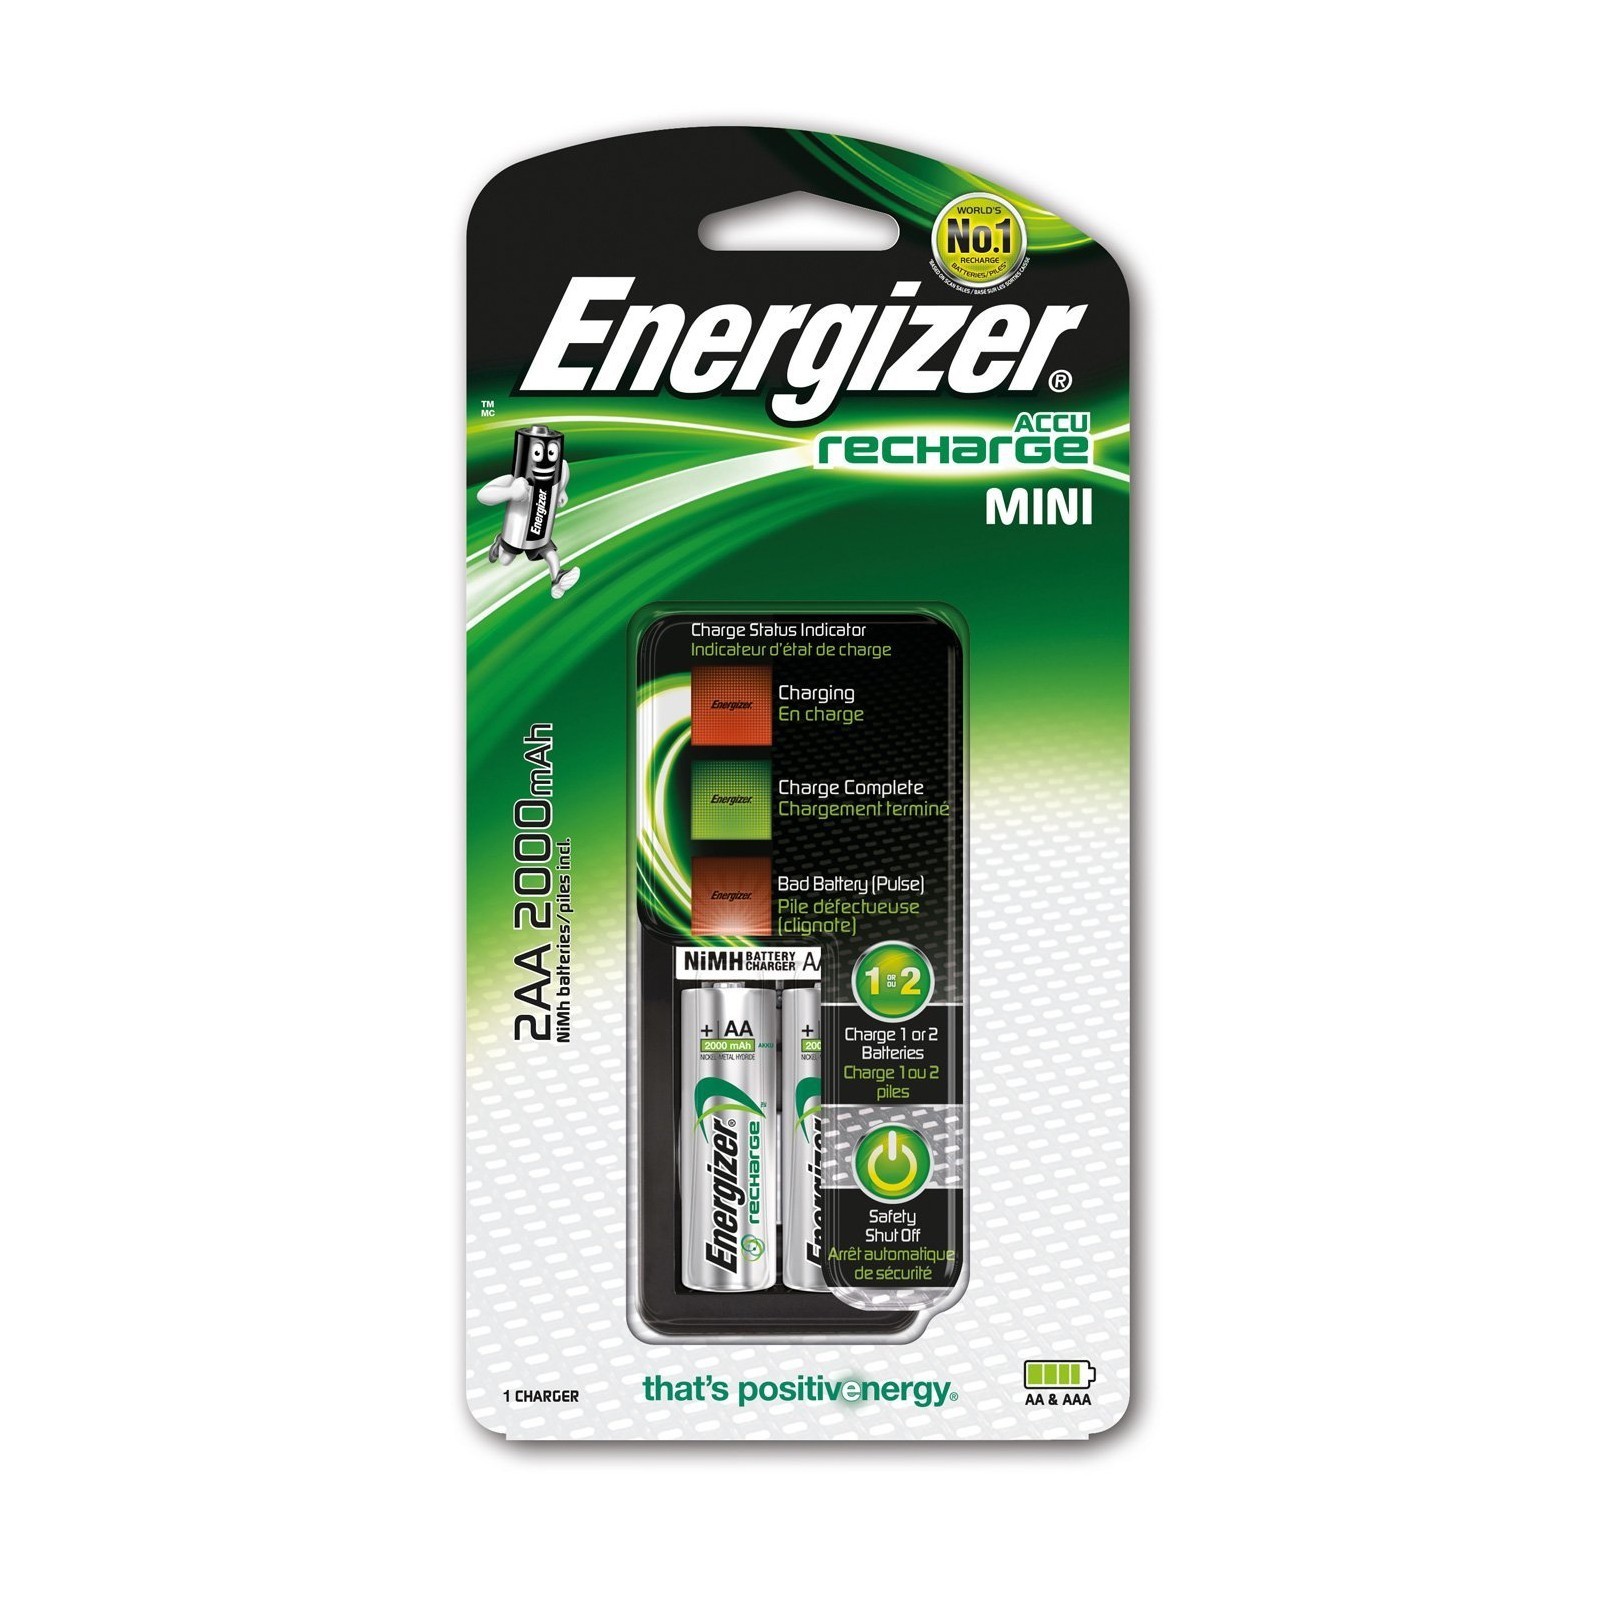 Mini chargeur de piles Energizer + 2 AA HR6 2000mAh incluses